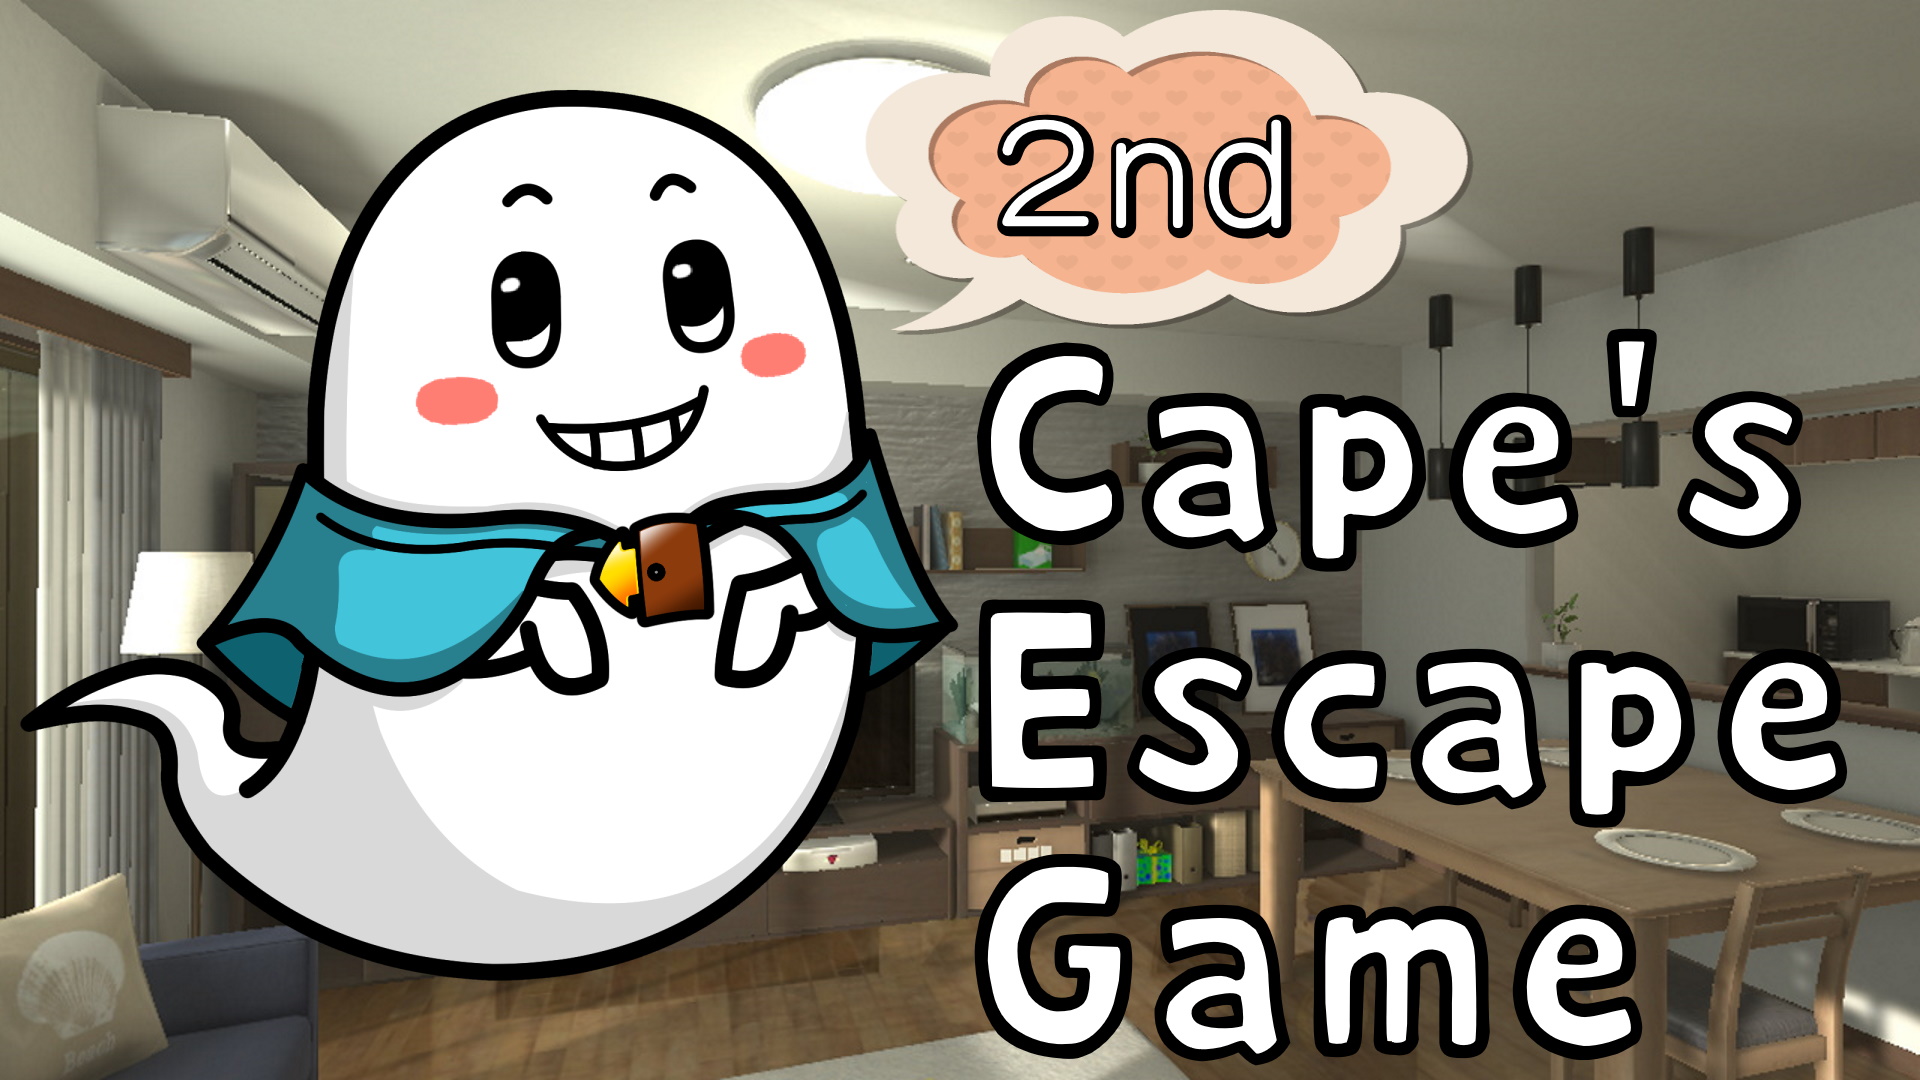 Cape's Escape Game 2nd room